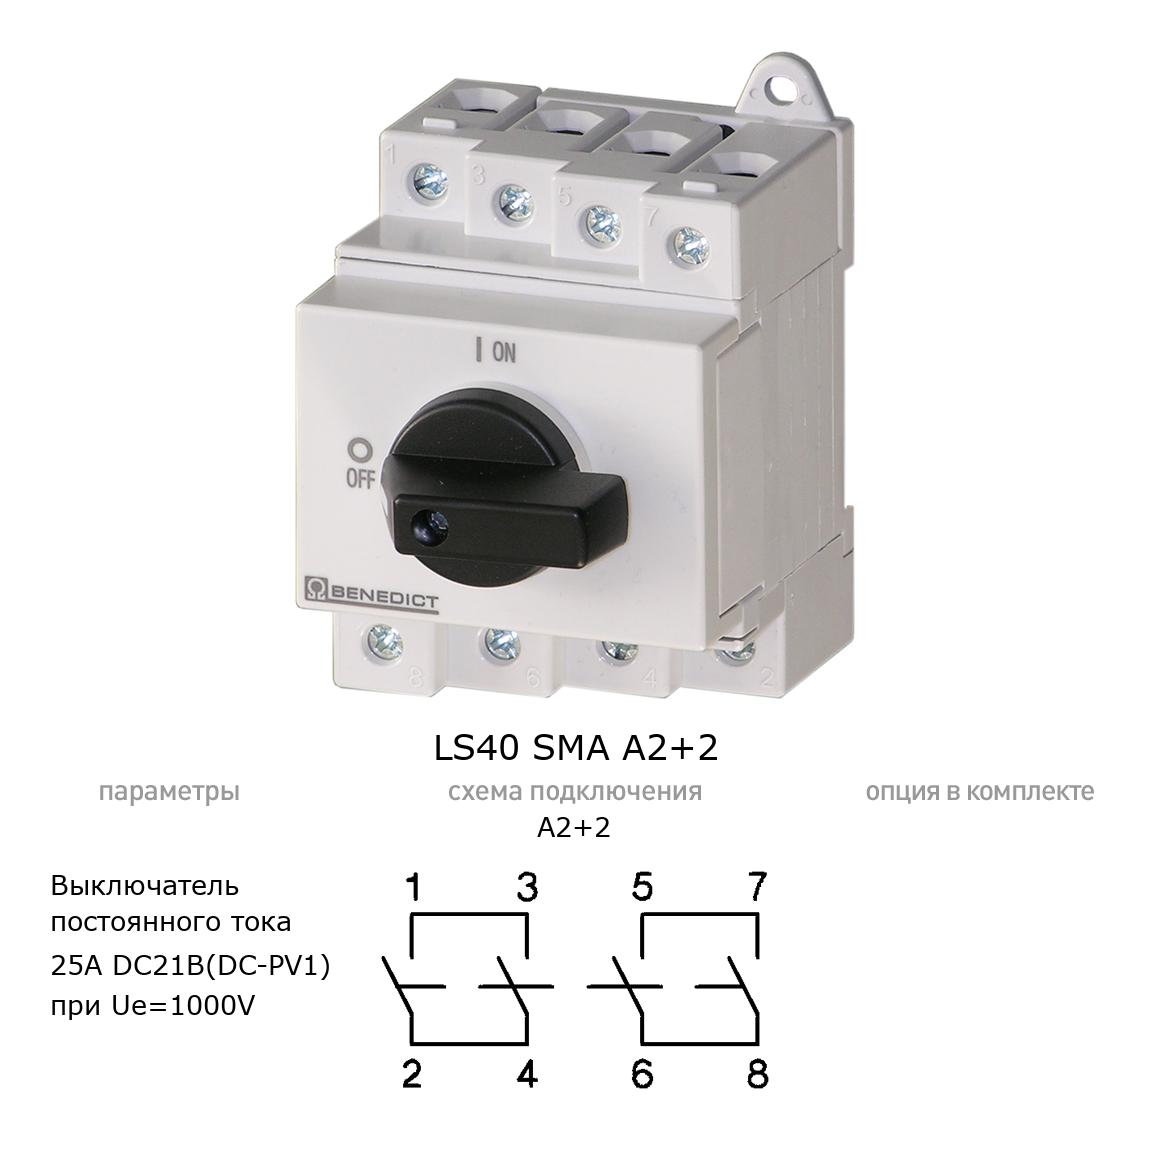 Кулачковый переключатель для постоянного тока (DC) LS40 SMA A2+2 BENEDICT